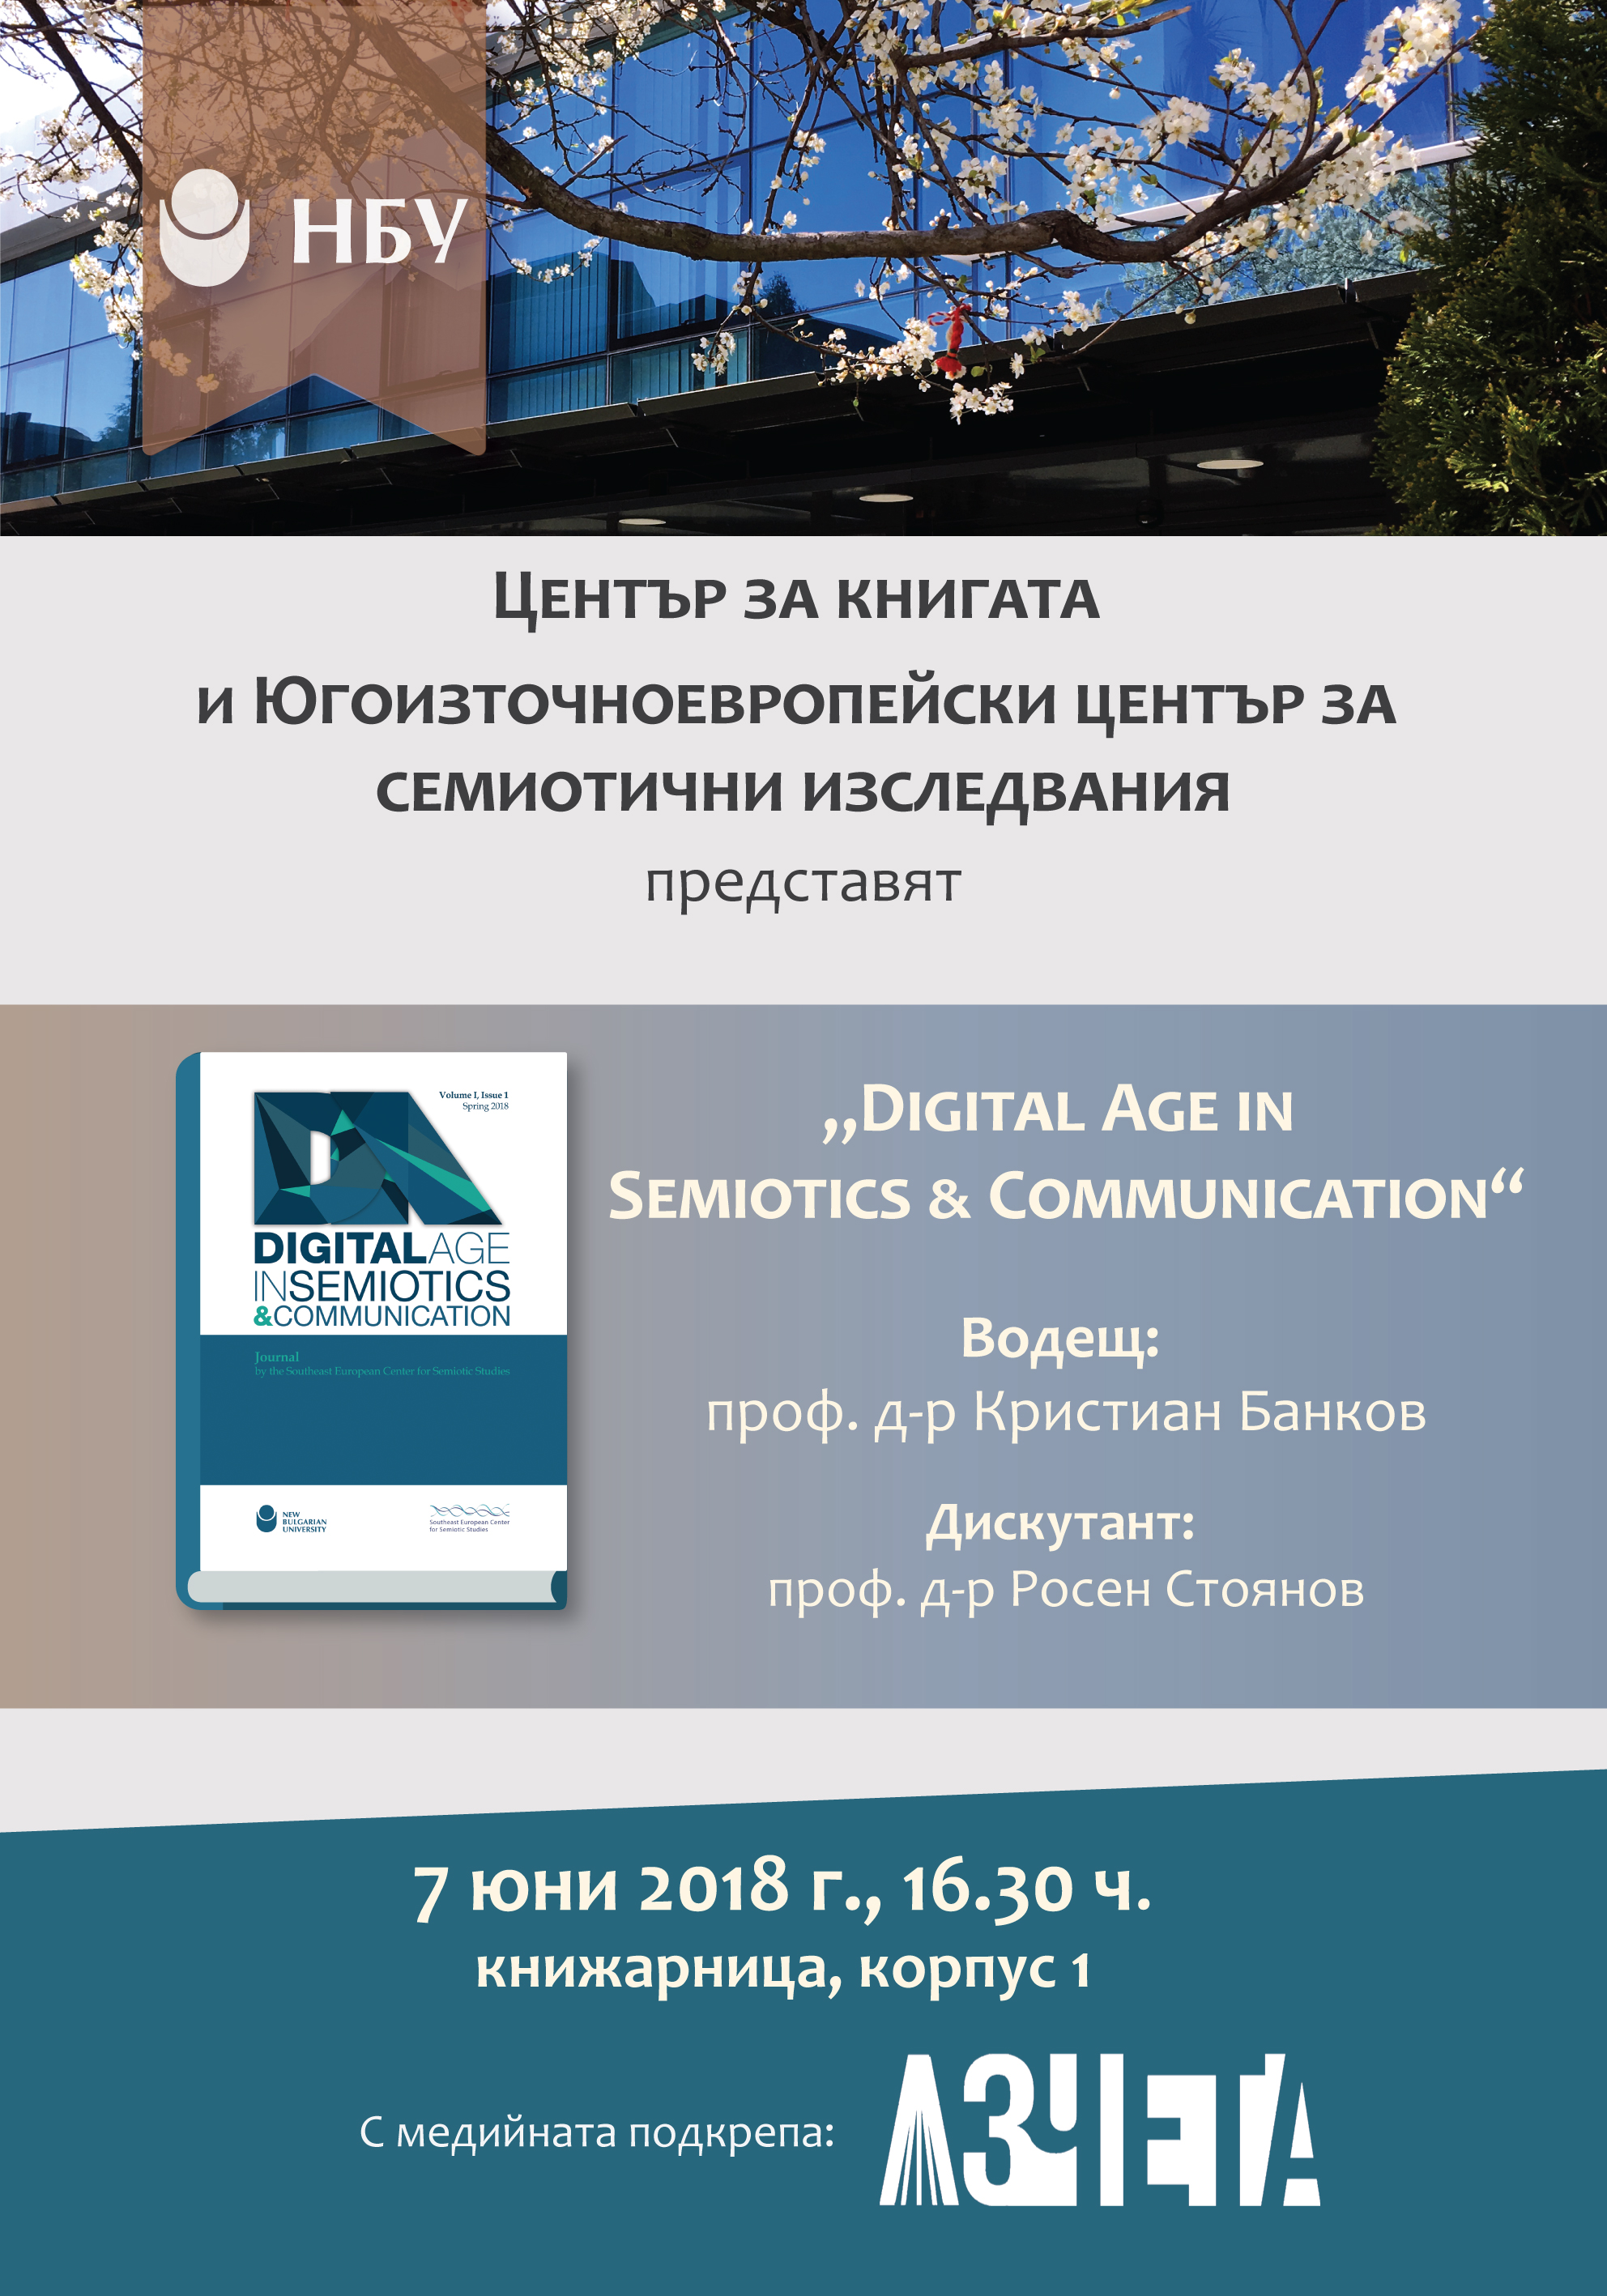 Представяне на „Digital Age in Semiotics & Communication“